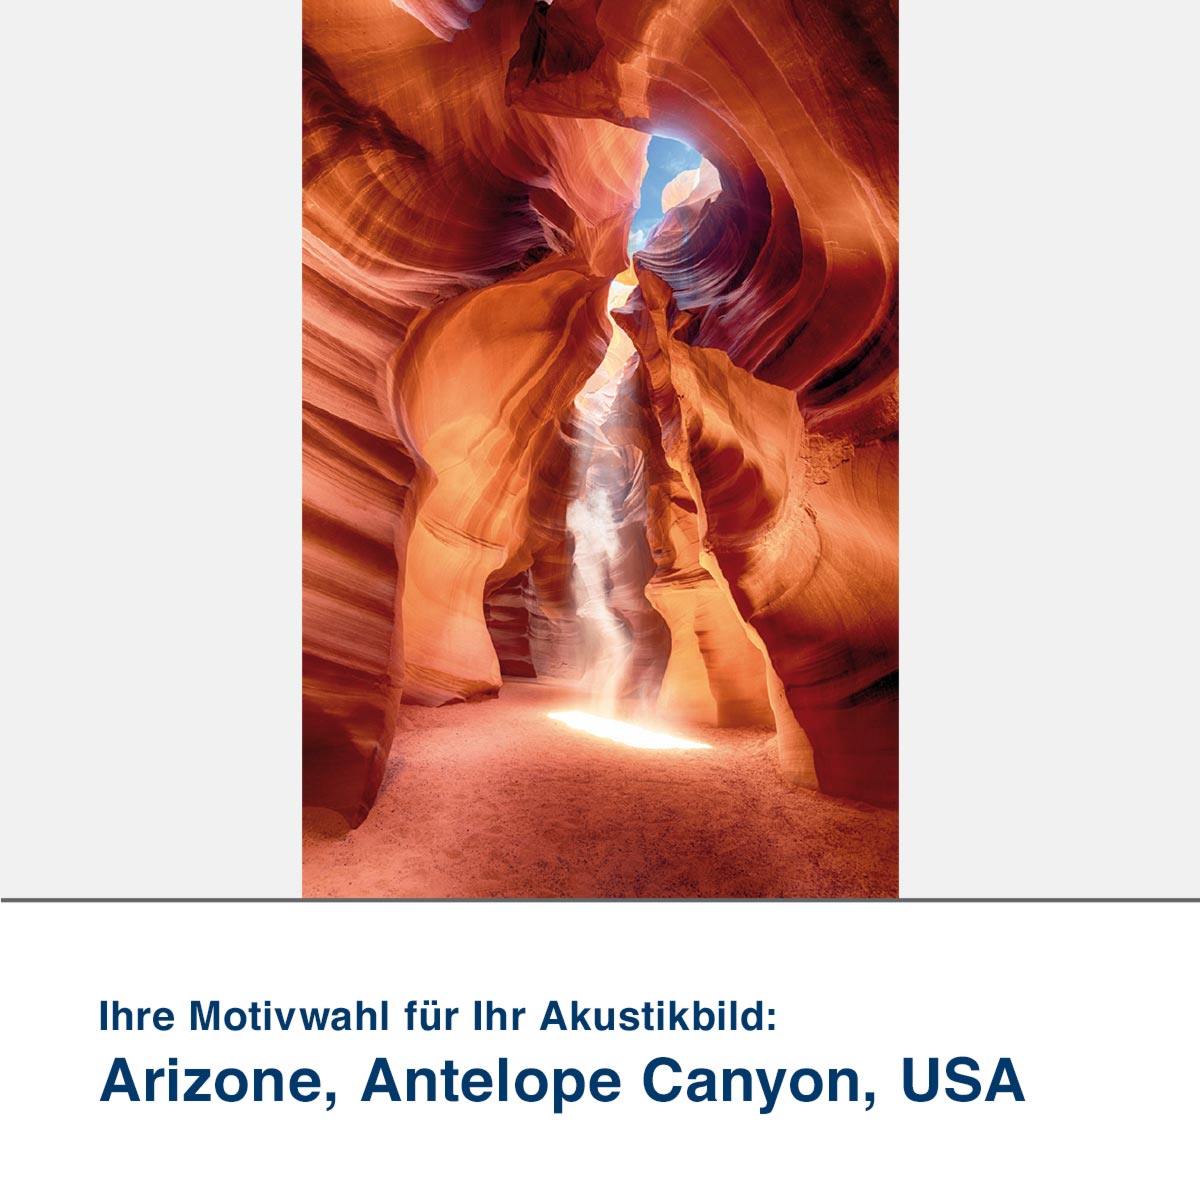 Akustikbild Motiv Arizone, Antelope Canyon, USA